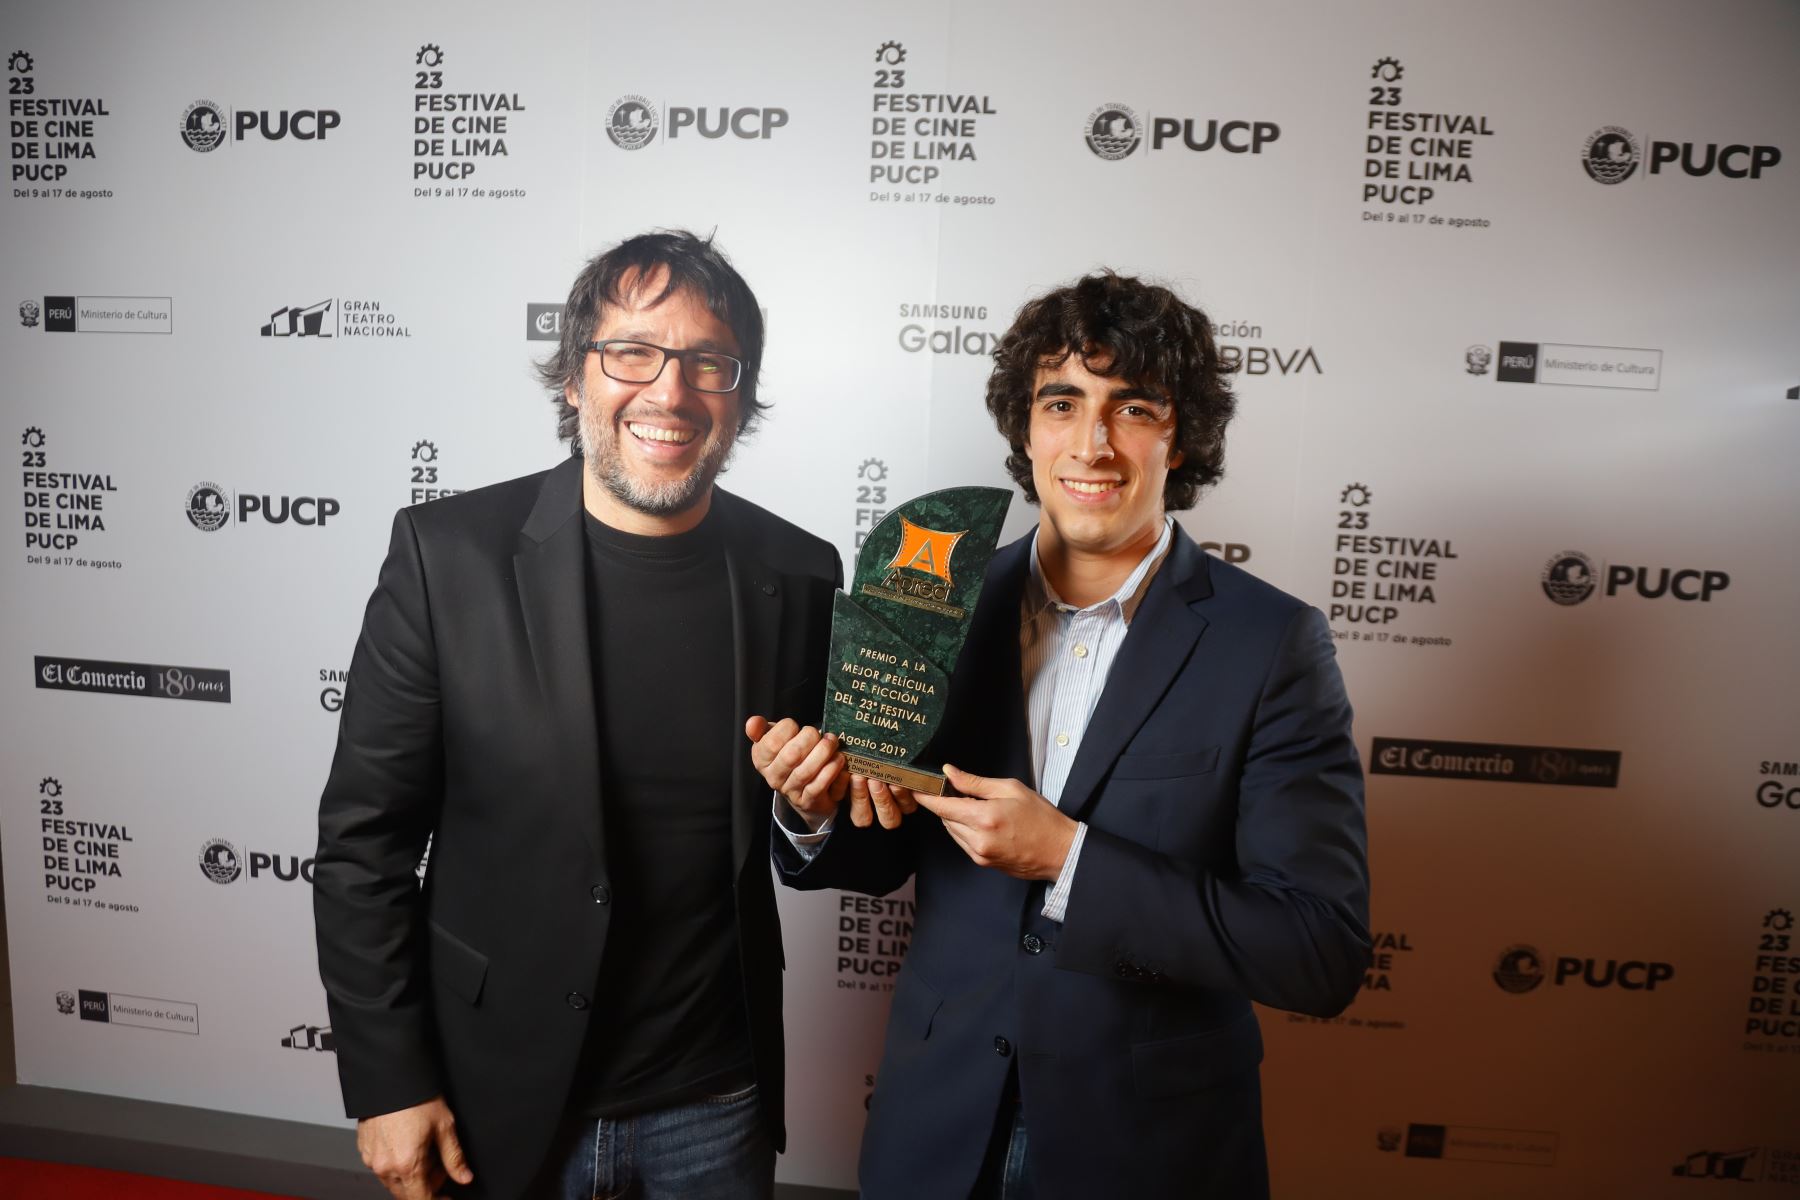 Cineasta Daniel Vega y actor Jorge Guerra recibiendo premio de Apreci a mejor película del Festival de Lima.